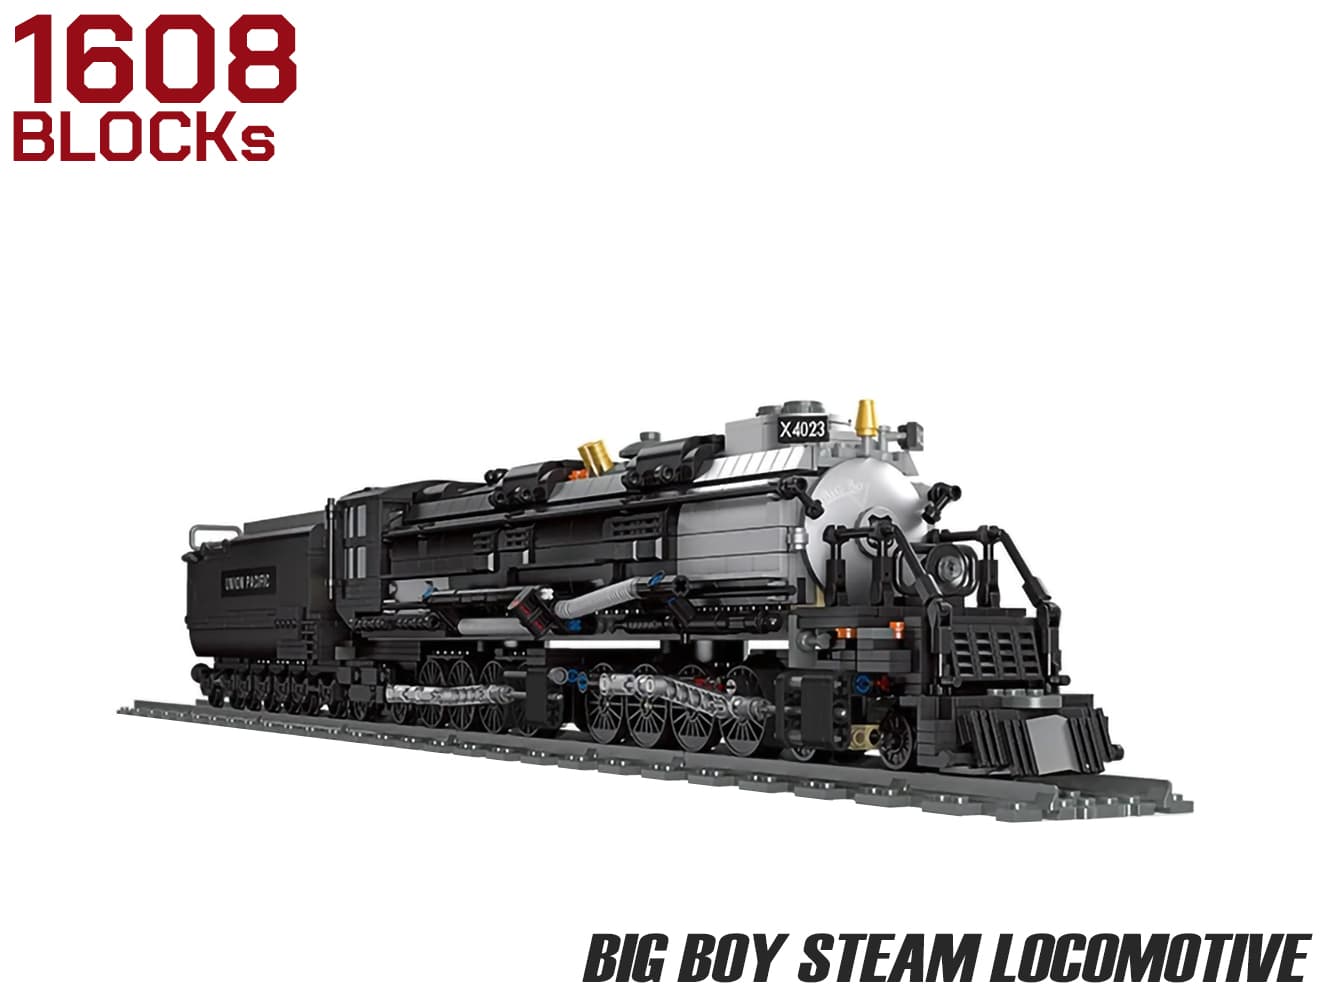 AFM BIG BOY 蒸気機関車 1608Blocks | ミリタリーベース – ミリタリー